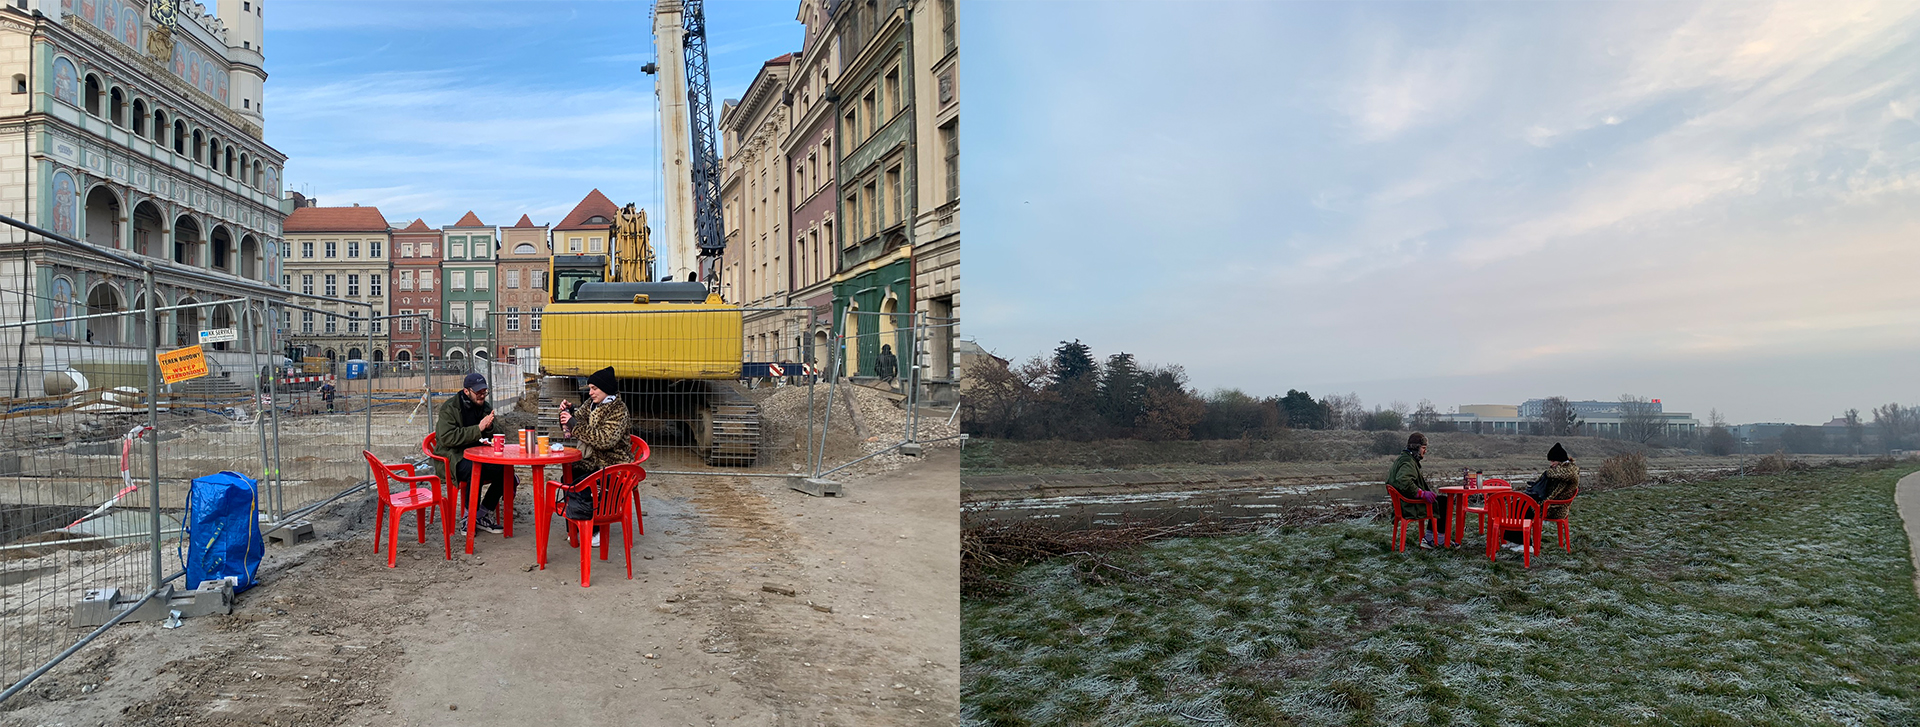 Kompozycja dwóch zdjęć. Na zdjęciach grupa 3 osób siedzi na czerwonych plastikowych krzesłach przy czerwonym stoliku, osoby piją herbatę. Zdjęcie plenerowe, teren miasta Poznania.